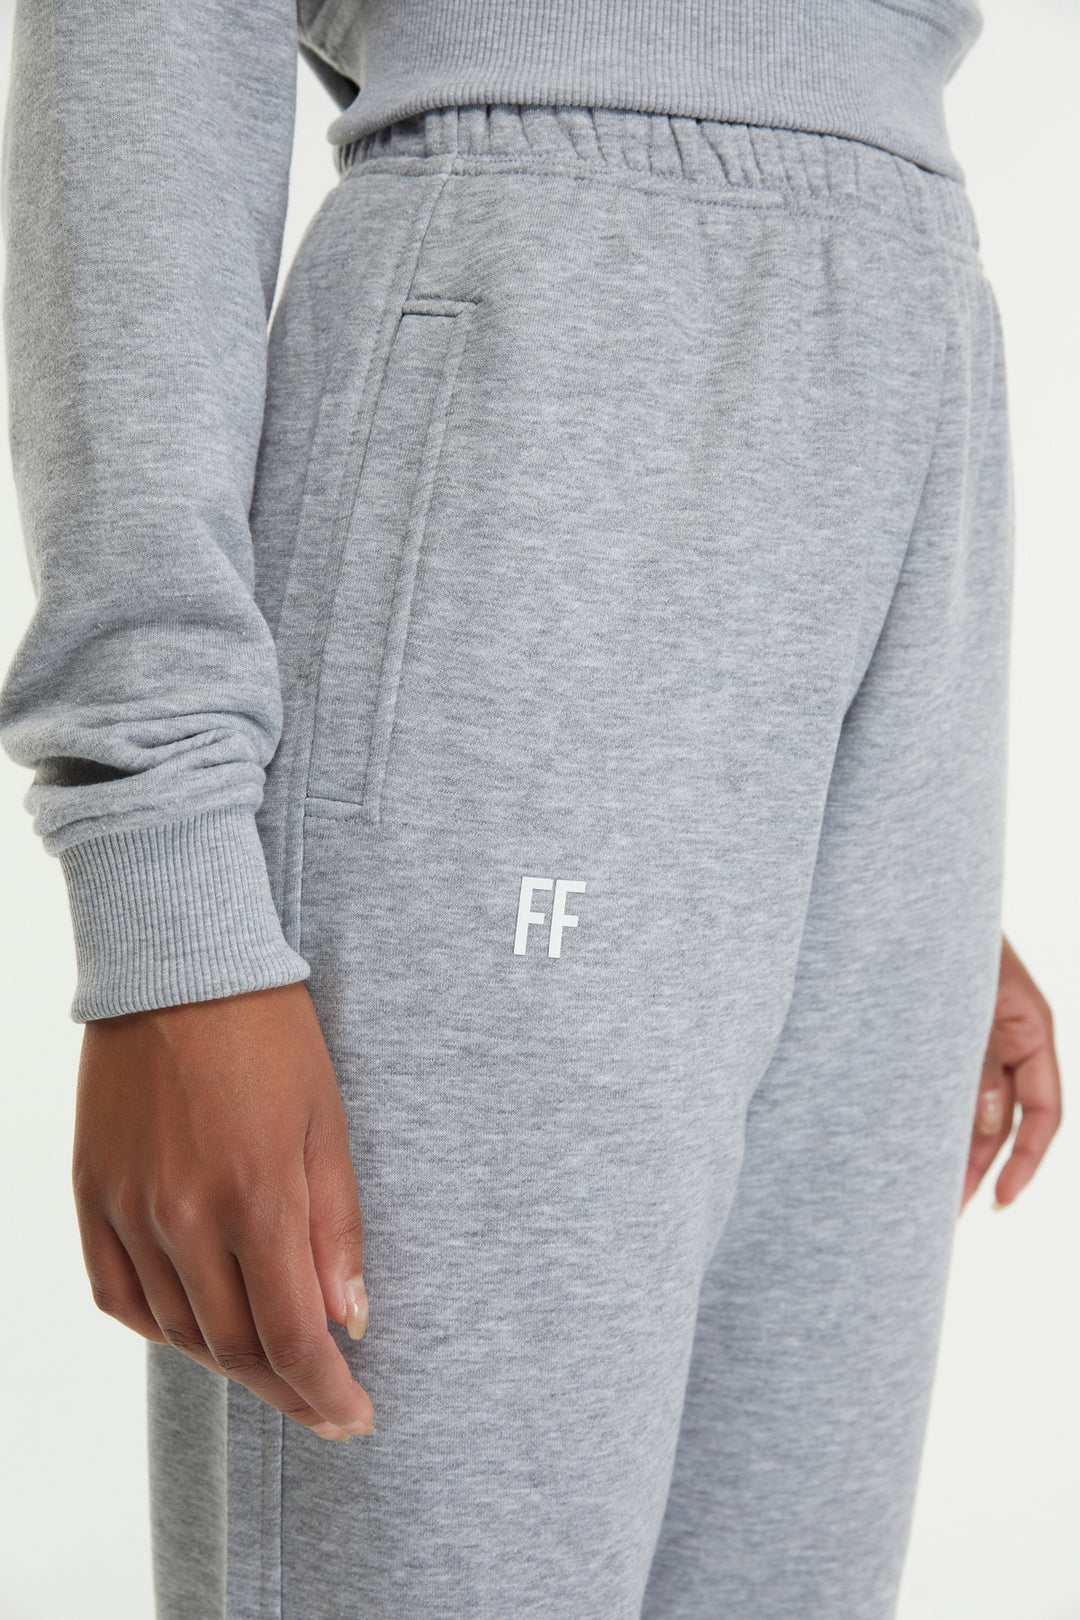 FF / Women's Sweatpants